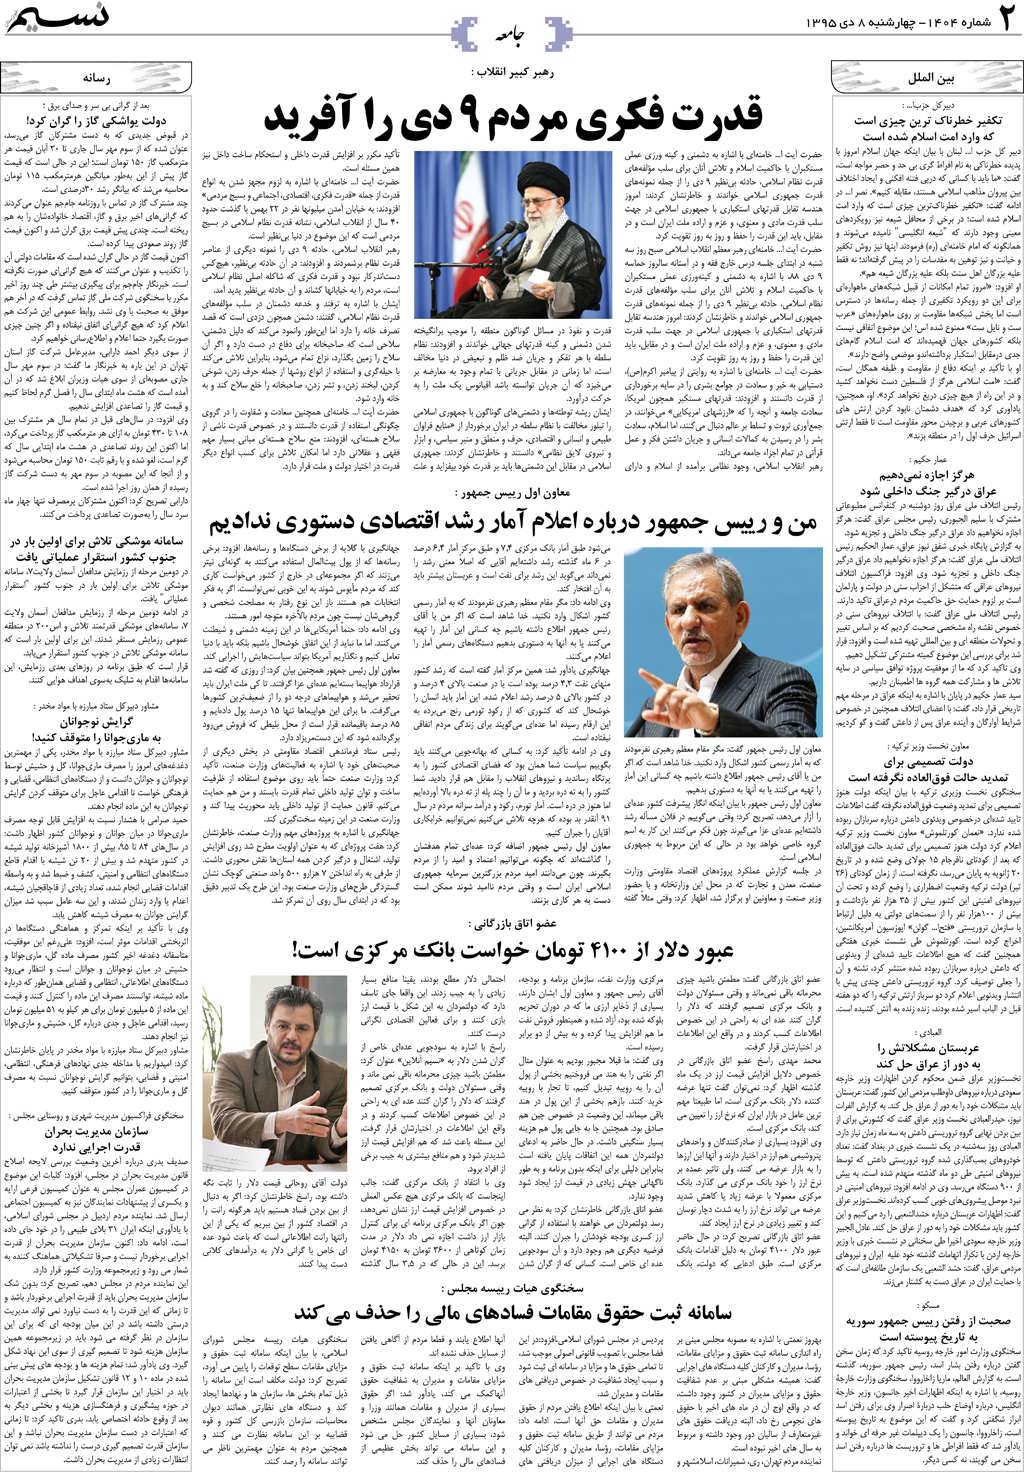 صفحه جامعه روزنامه نسیم شماره 1404